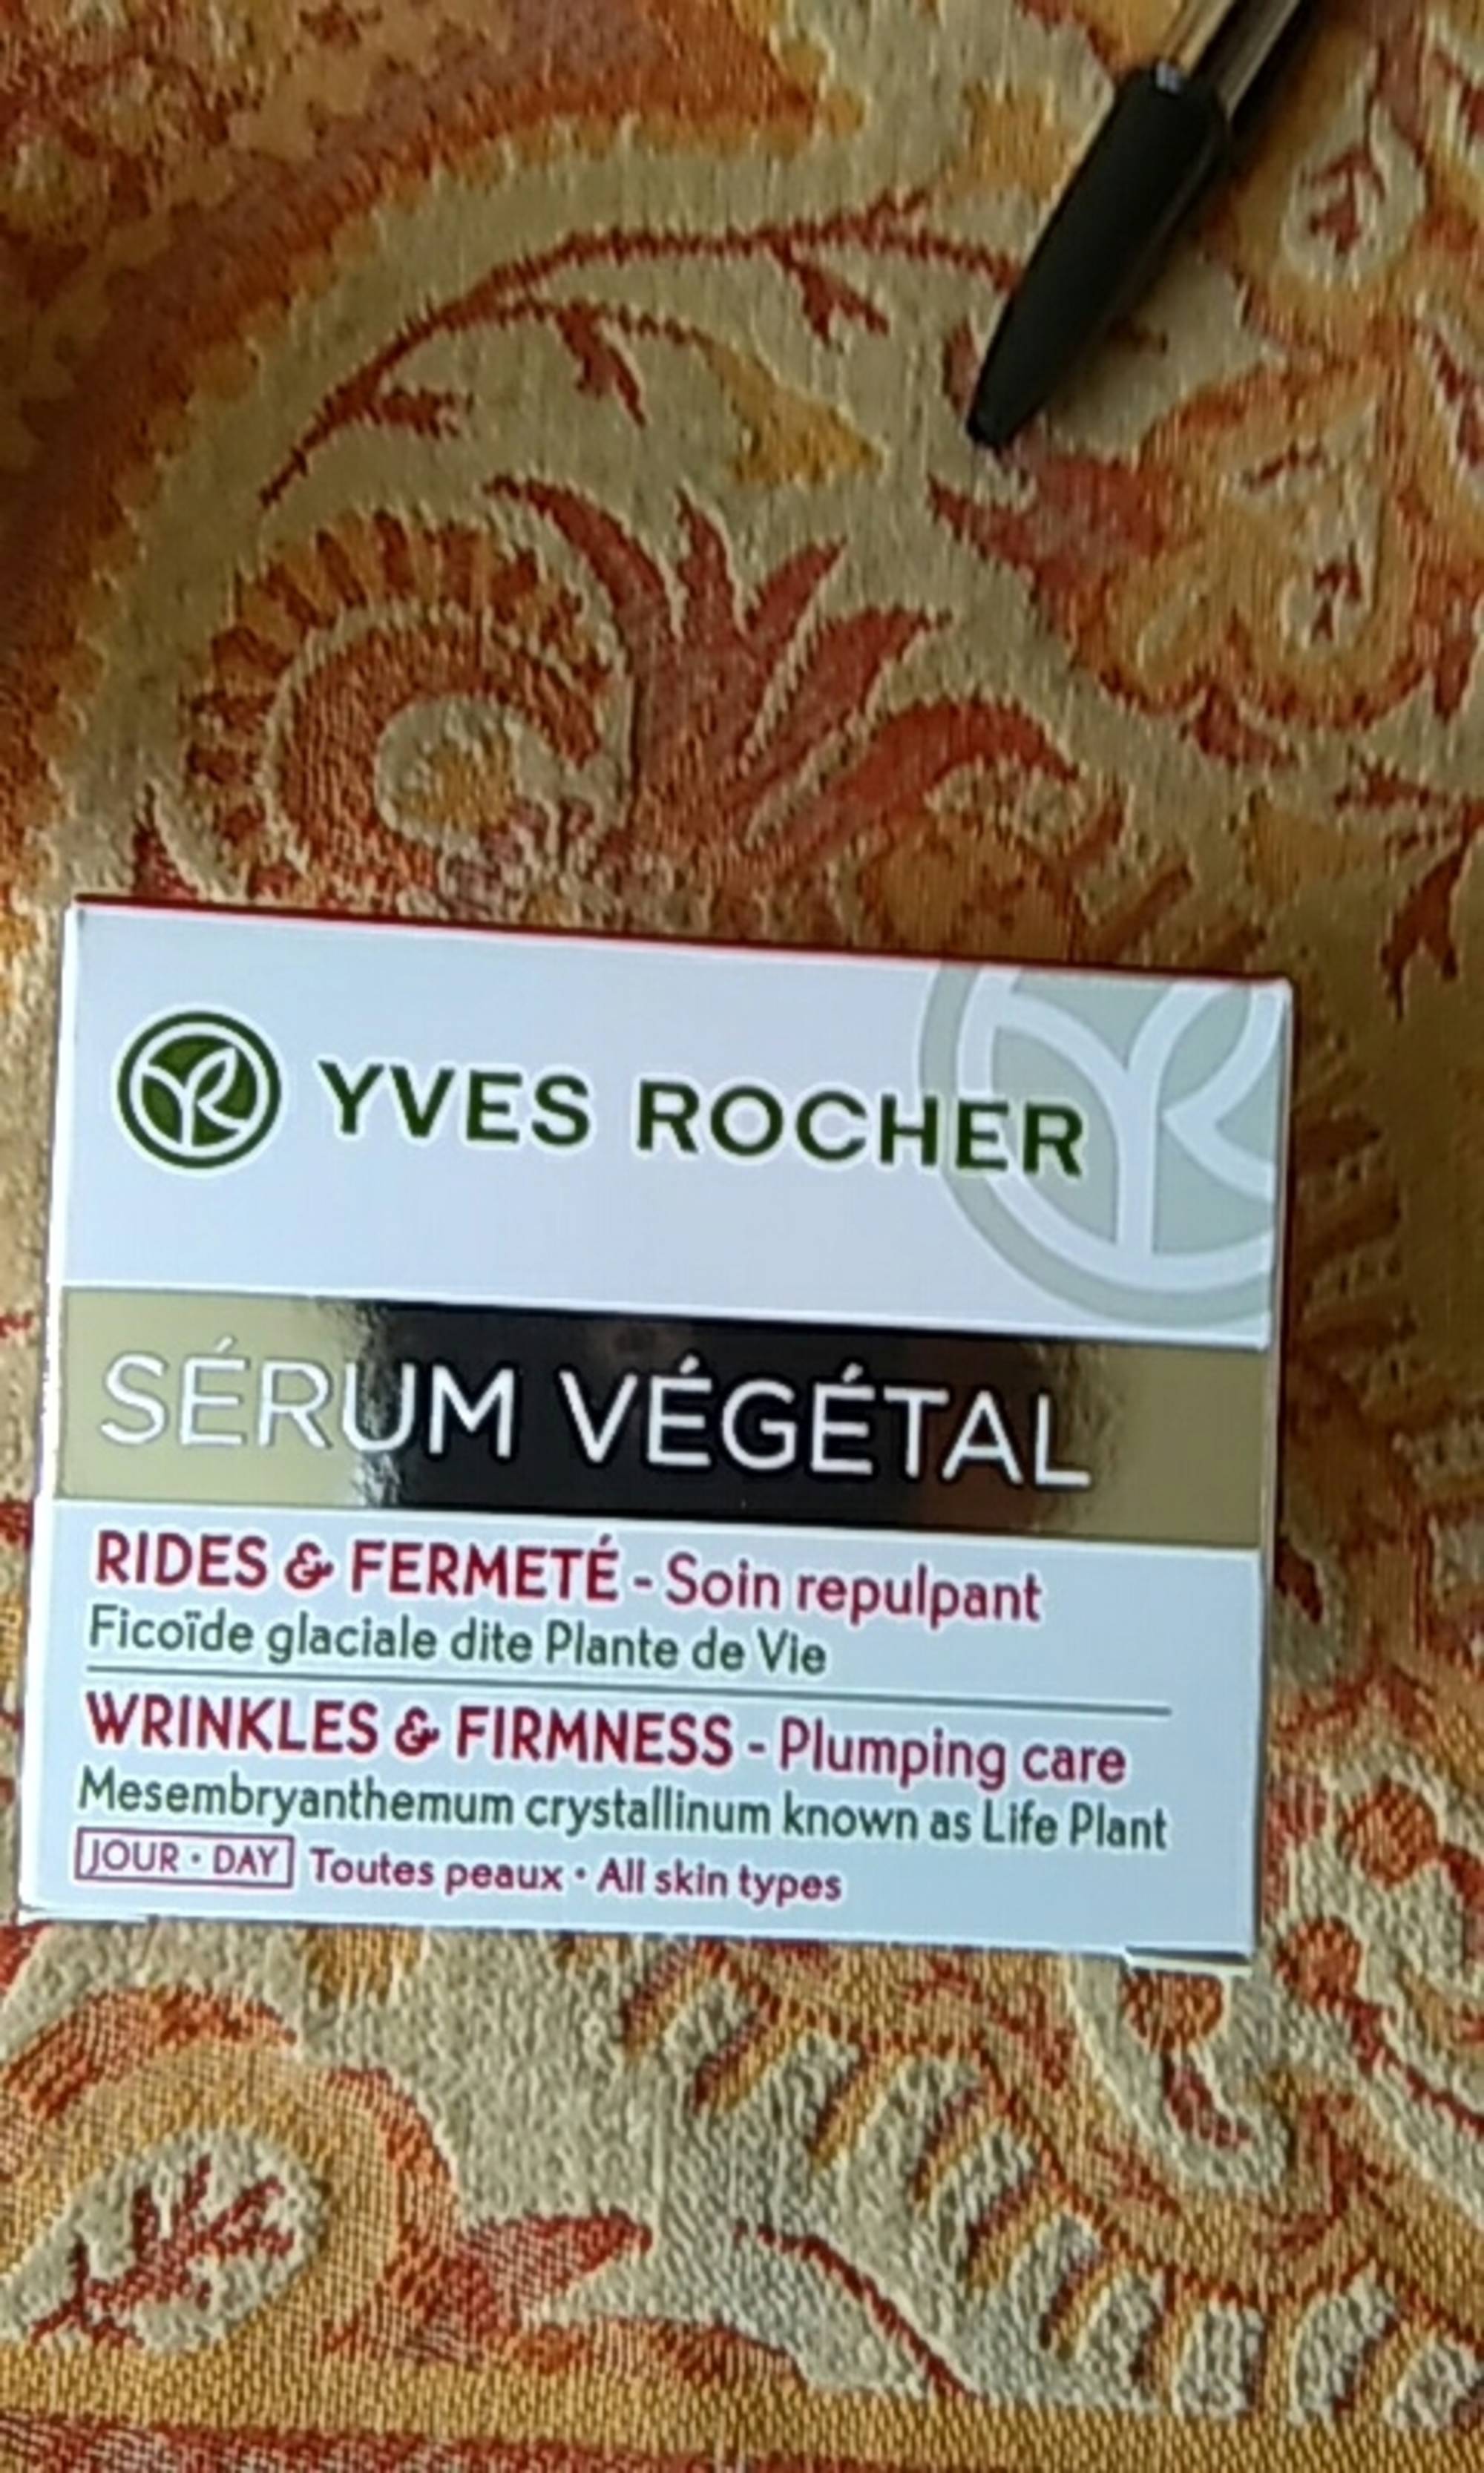 YVES ROCHER - Sérum végétal - Rides & fermeté soin repulpant